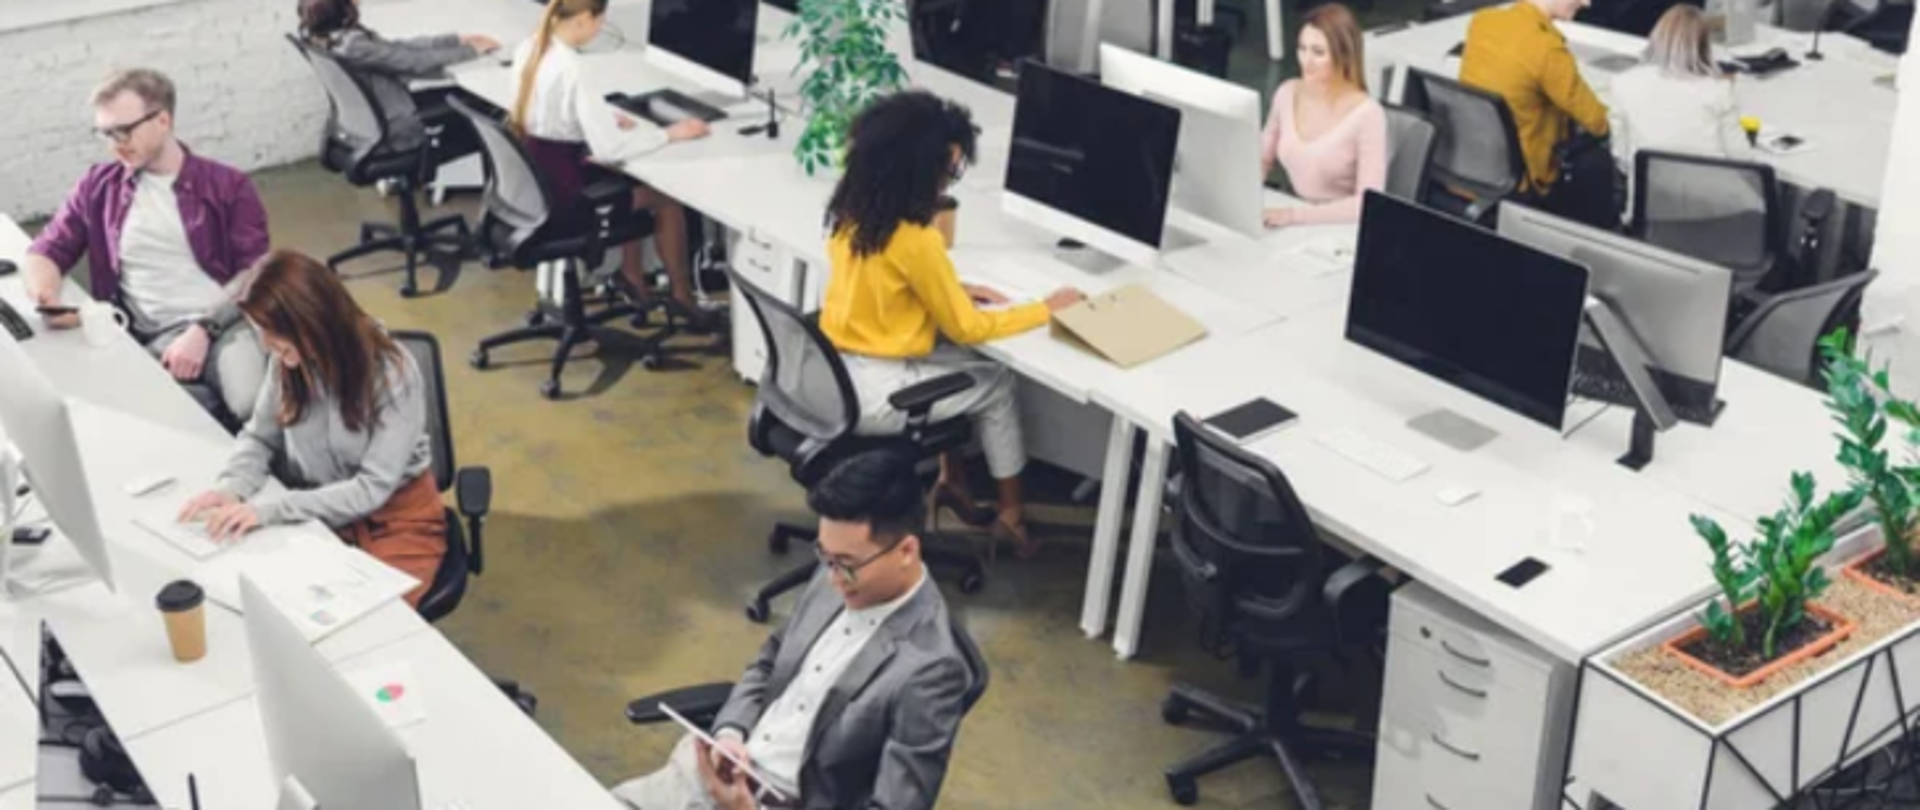 Na zdjęciu znajdują się ludzie pracujący w biurze przy białych biurkach z komputerami.